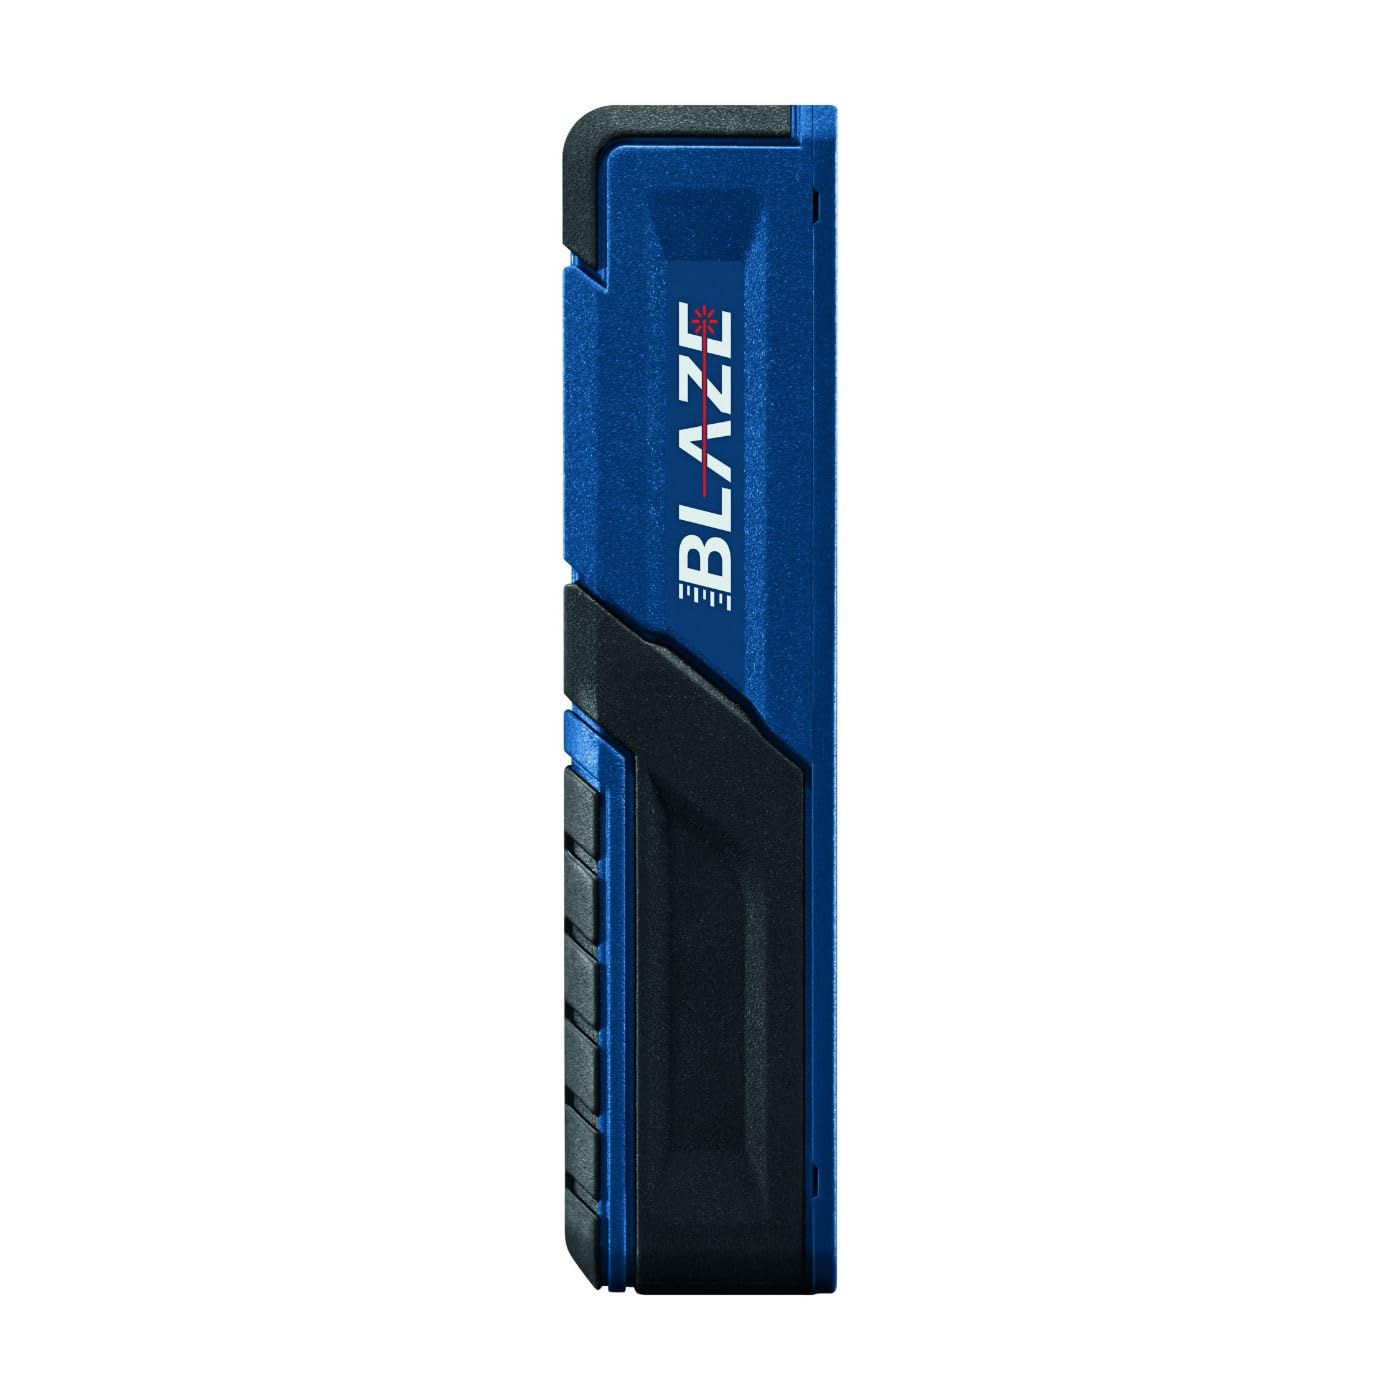 Bosch Blaze Pro GLM165-40 165ft Laser Distance Measure with Color Backlit Display